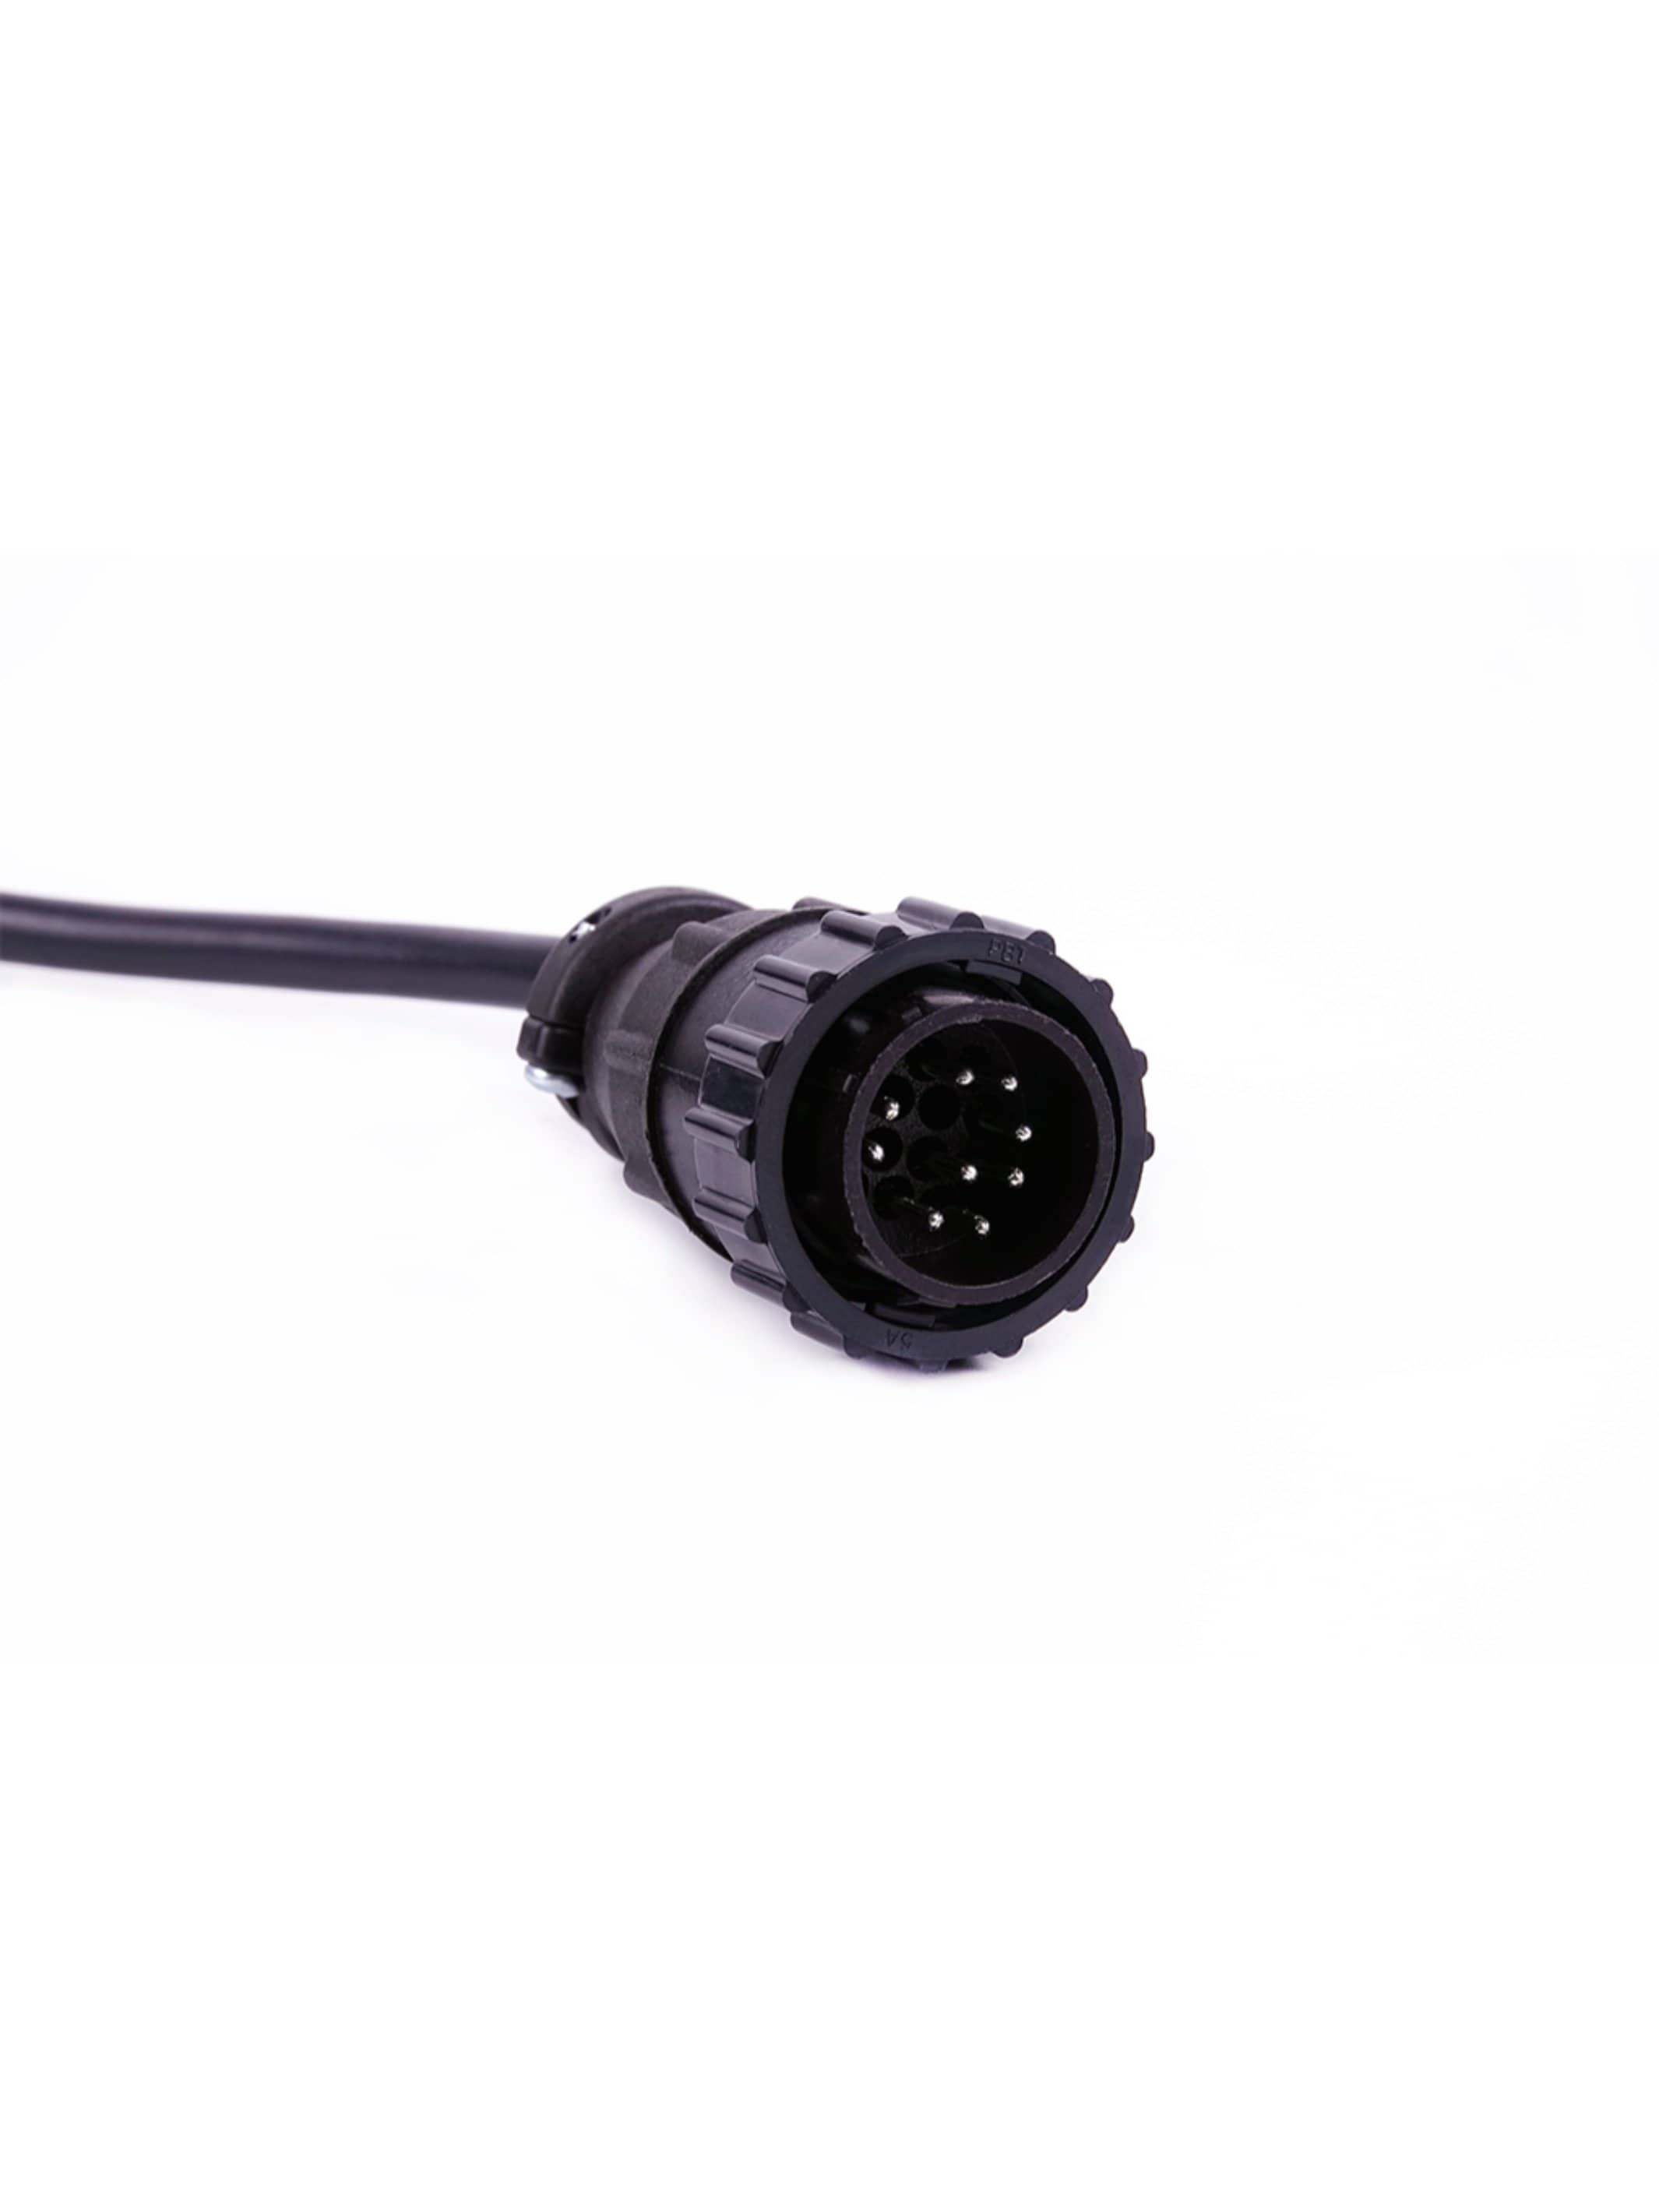 Doosan Diagnostic Cable NEW - Jaltest JDC545A